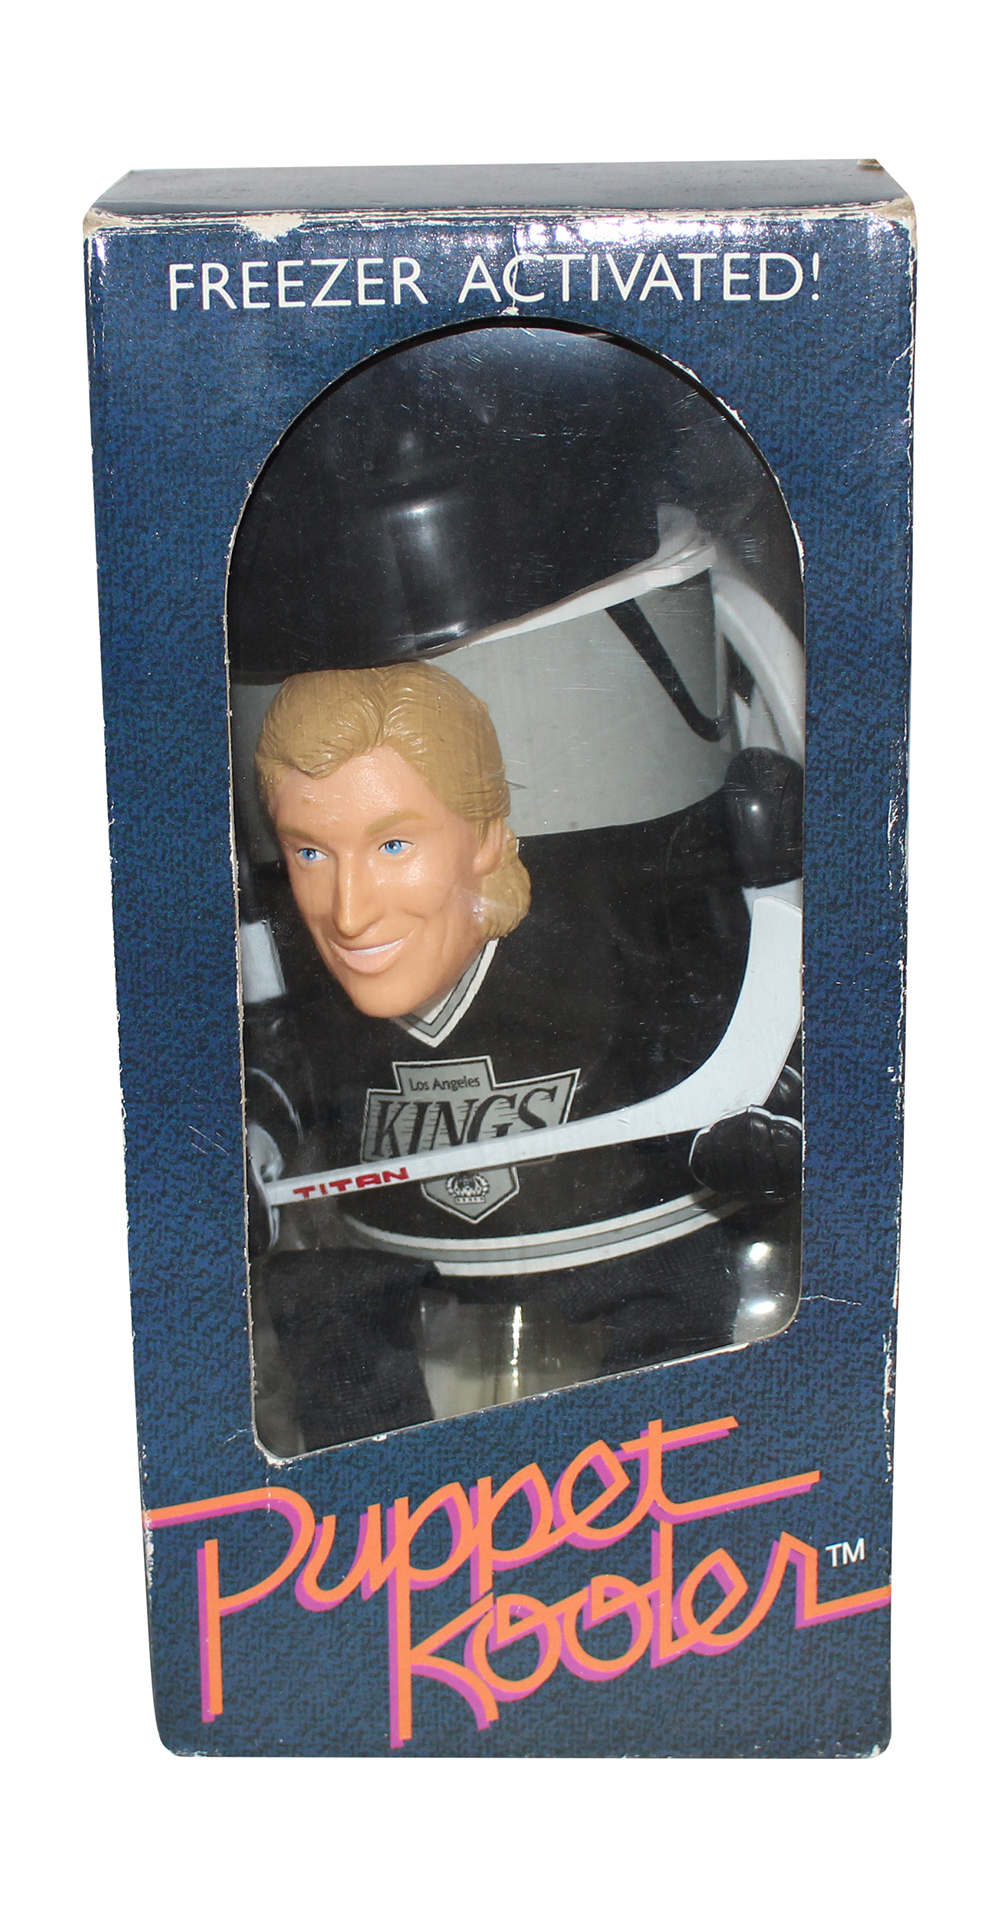 Wayne Gretzky Los Angeles Kings Puppet Kooler 31993